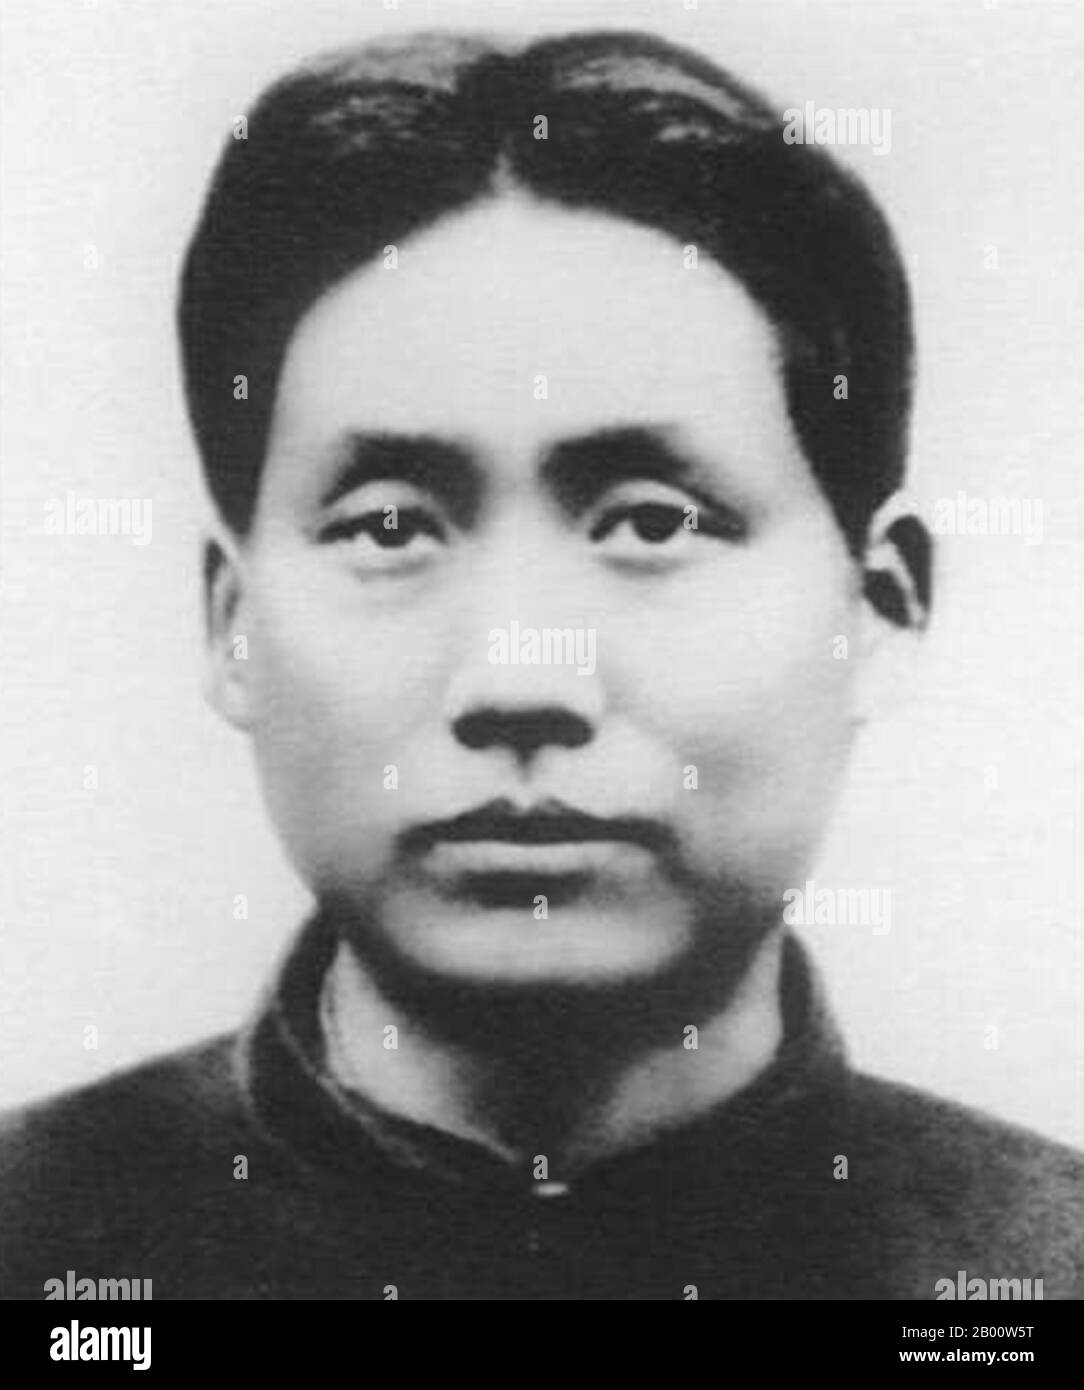 Chine : Mao Zedong en 1927. Mao Zedong, également translittéré Mao Tse-tung (26 décembre 1893 – 9 septembre 1976), était un révolutionnaire communiste chinois, stratège de la guérilla, auteur, théoricien politique et chef de la Révolution chinoise. Communément appelé le président Mao, il fut l'architecte de la République populaire de Chine (RPC) depuis sa création en 1949, et a exercé un contrôle autoritaire sur la nation jusqu'à sa mort en 1976. Sa contribution théorique au marxisme-léninisme, ses stratégies militaires et son genre de politiques sont maintenant collectivement connus sous le nom de maoïsme. Banque D'Images